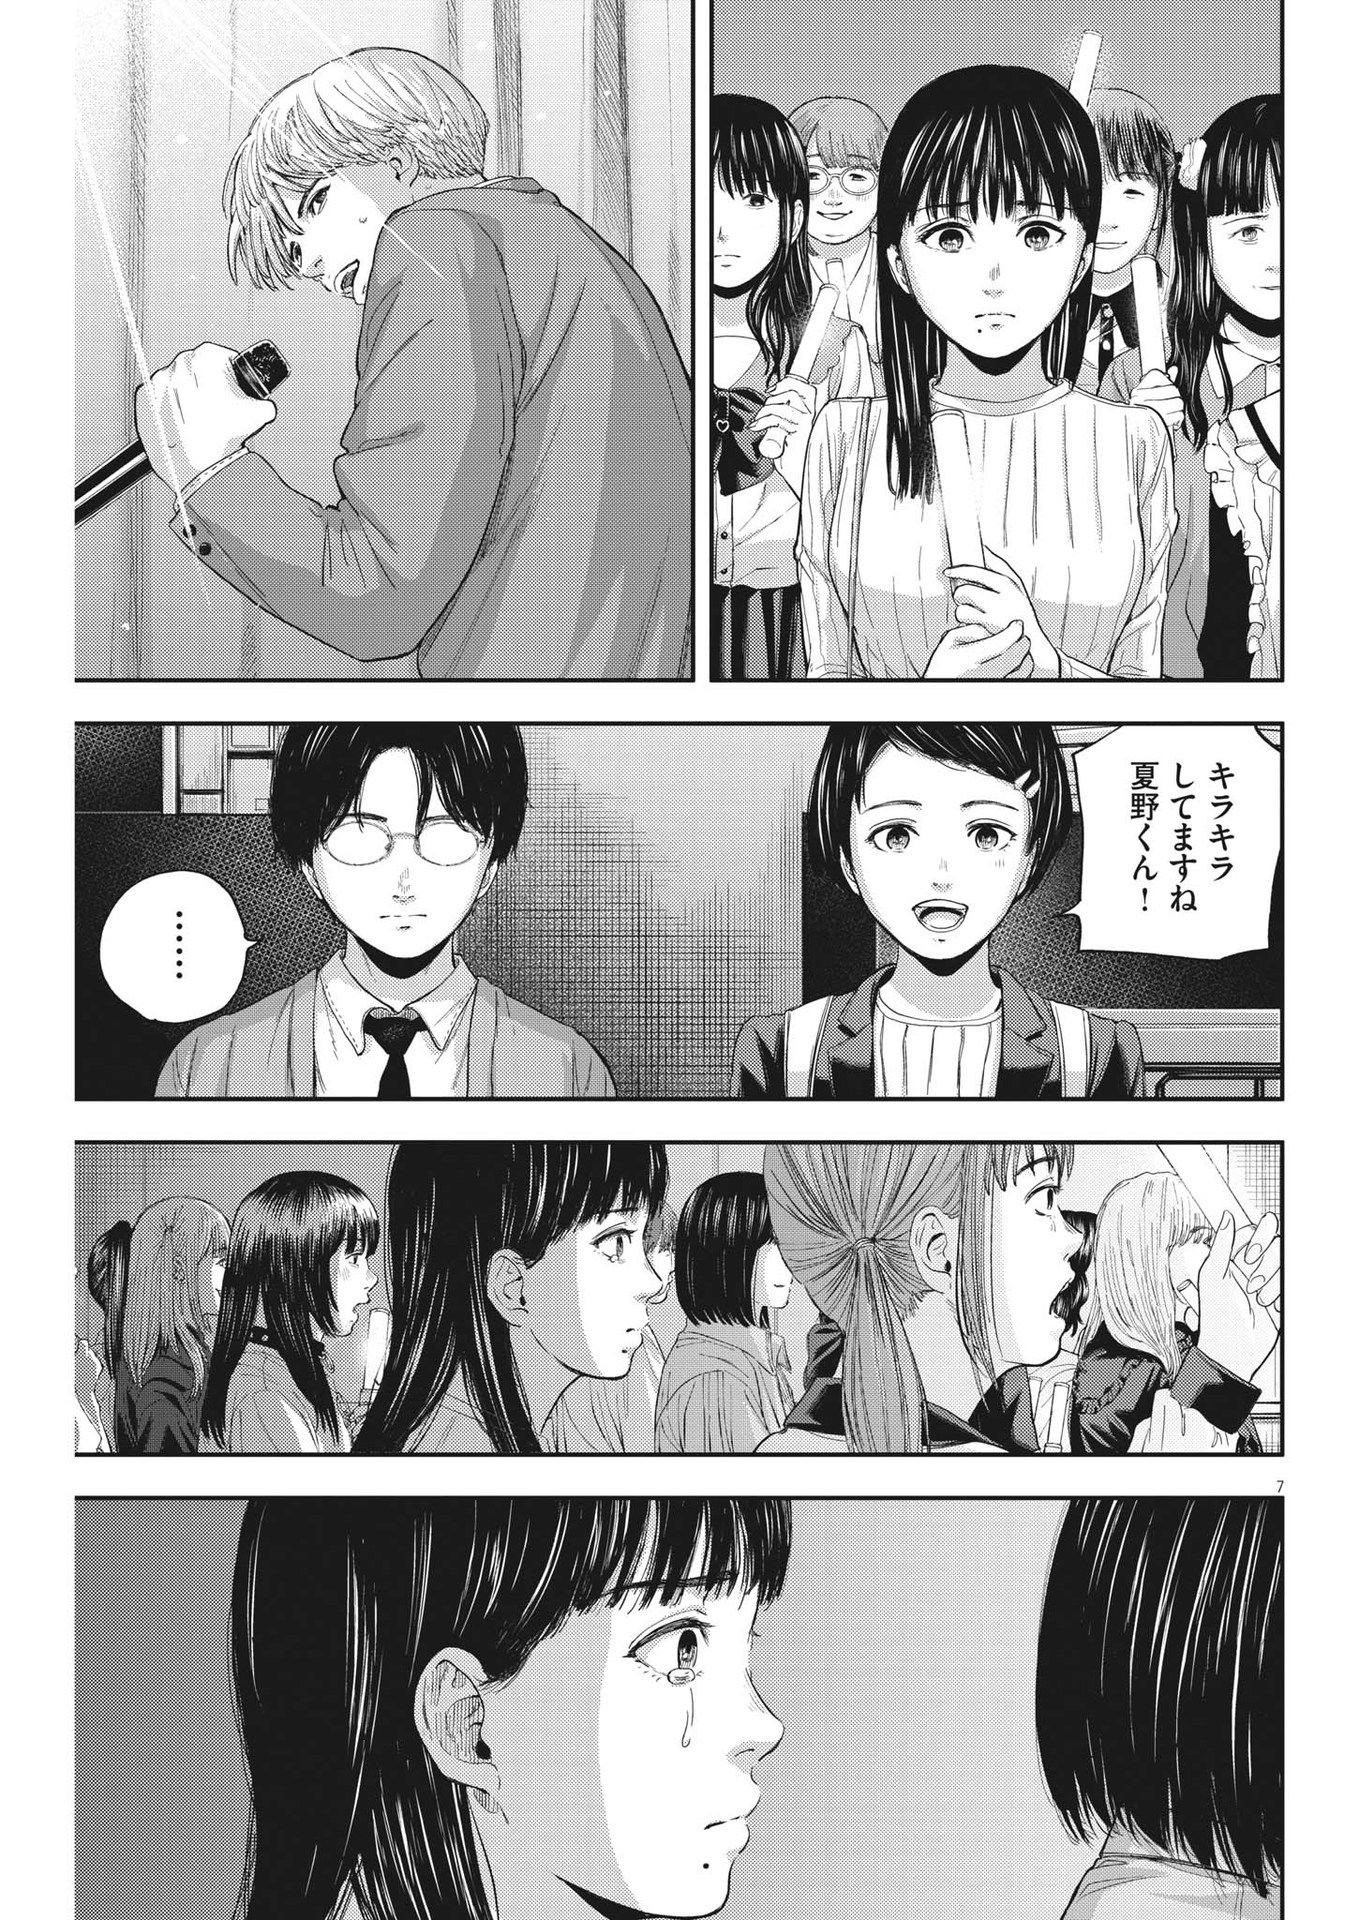 Yumenashi-sensei no Shinroshidou - Chapter 11 - Page 7